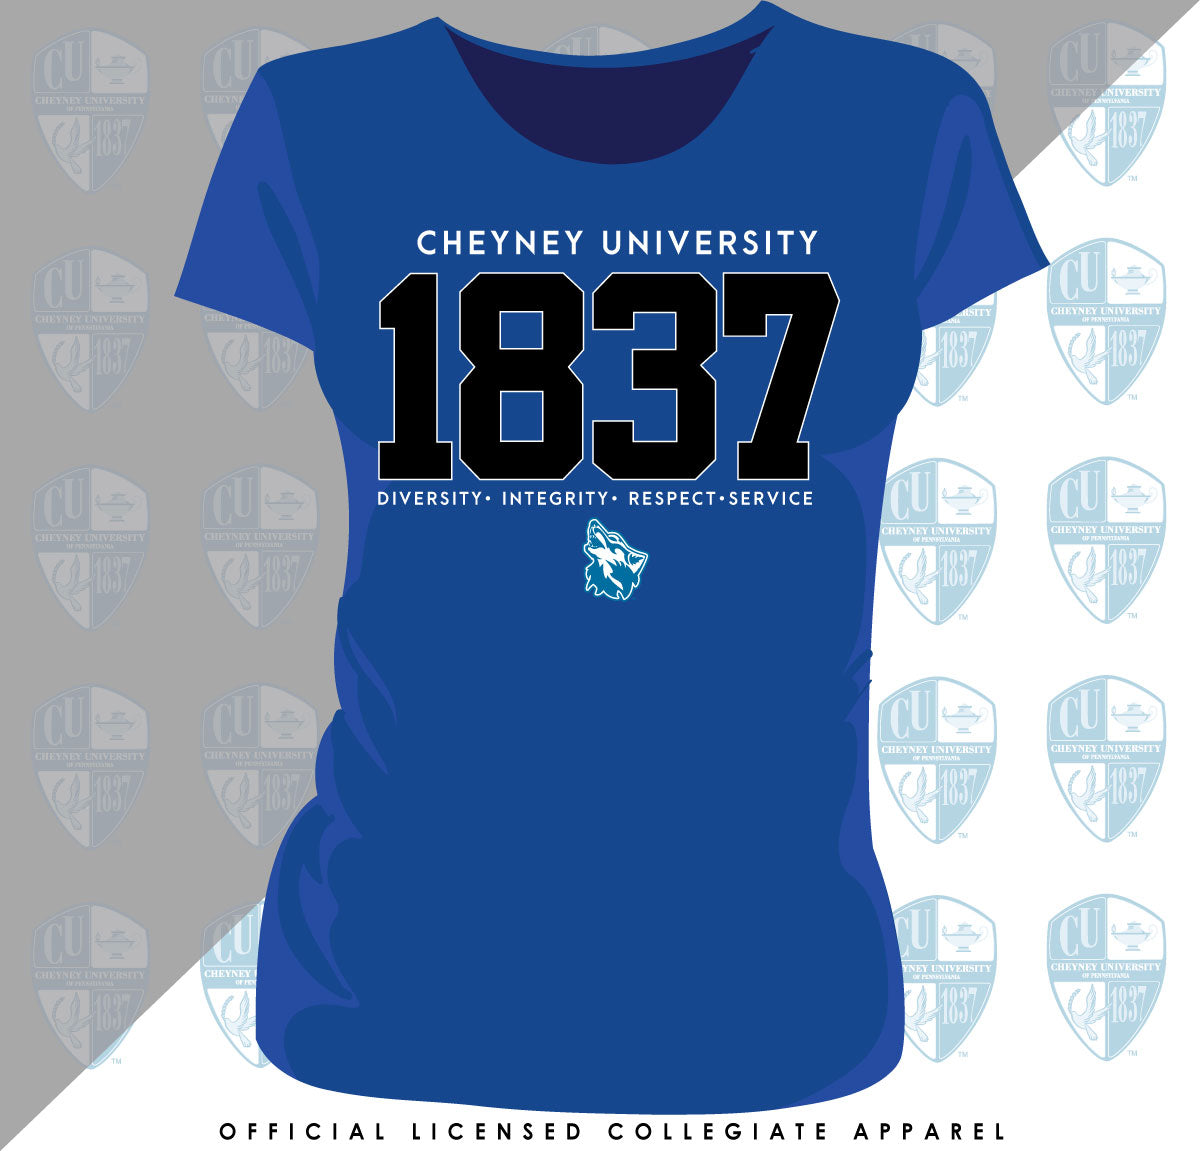 Cheyney University | EST. 1837 Royal Blue Ladies Tees (N)